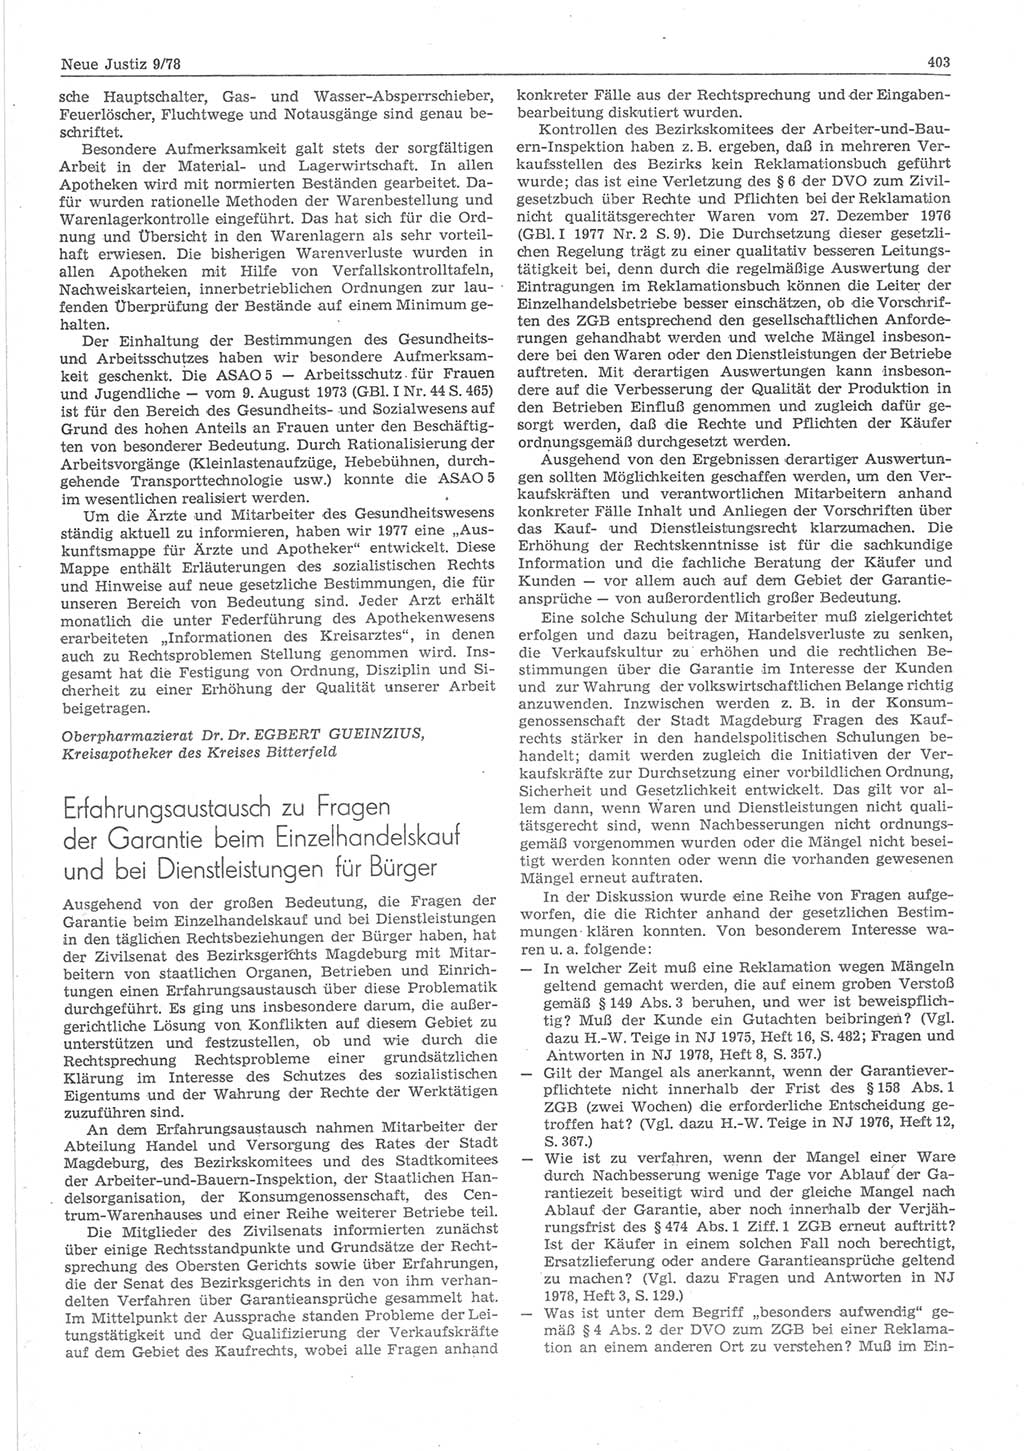 Neue Justiz (NJ), Zeitschrift für sozialistisches Recht und Gesetzlichkeit [Deutsche Demokratische Republik (DDR)], 32. Jahrgang 1978, Seite 403 (NJ DDR 1978, S. 403)